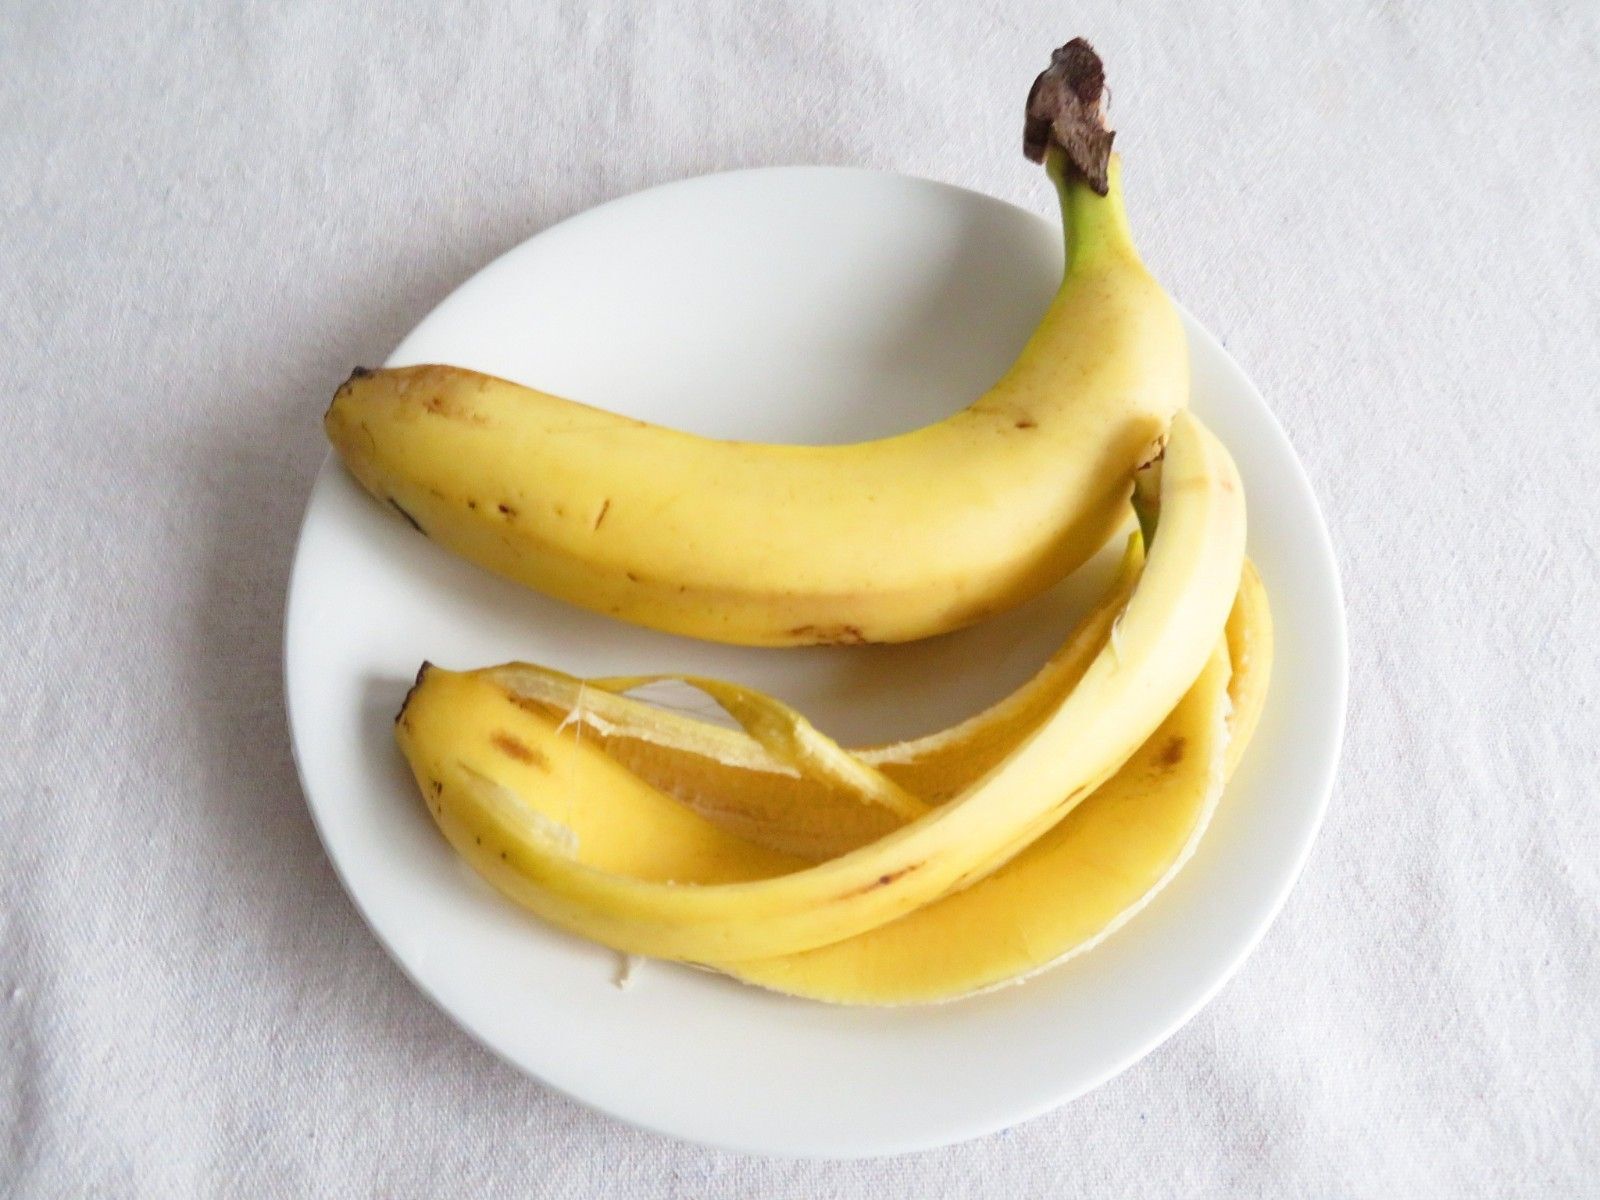 バナナの皮は捨てちゃダメ！意外すぎる使い方で家中で大活躍するんです